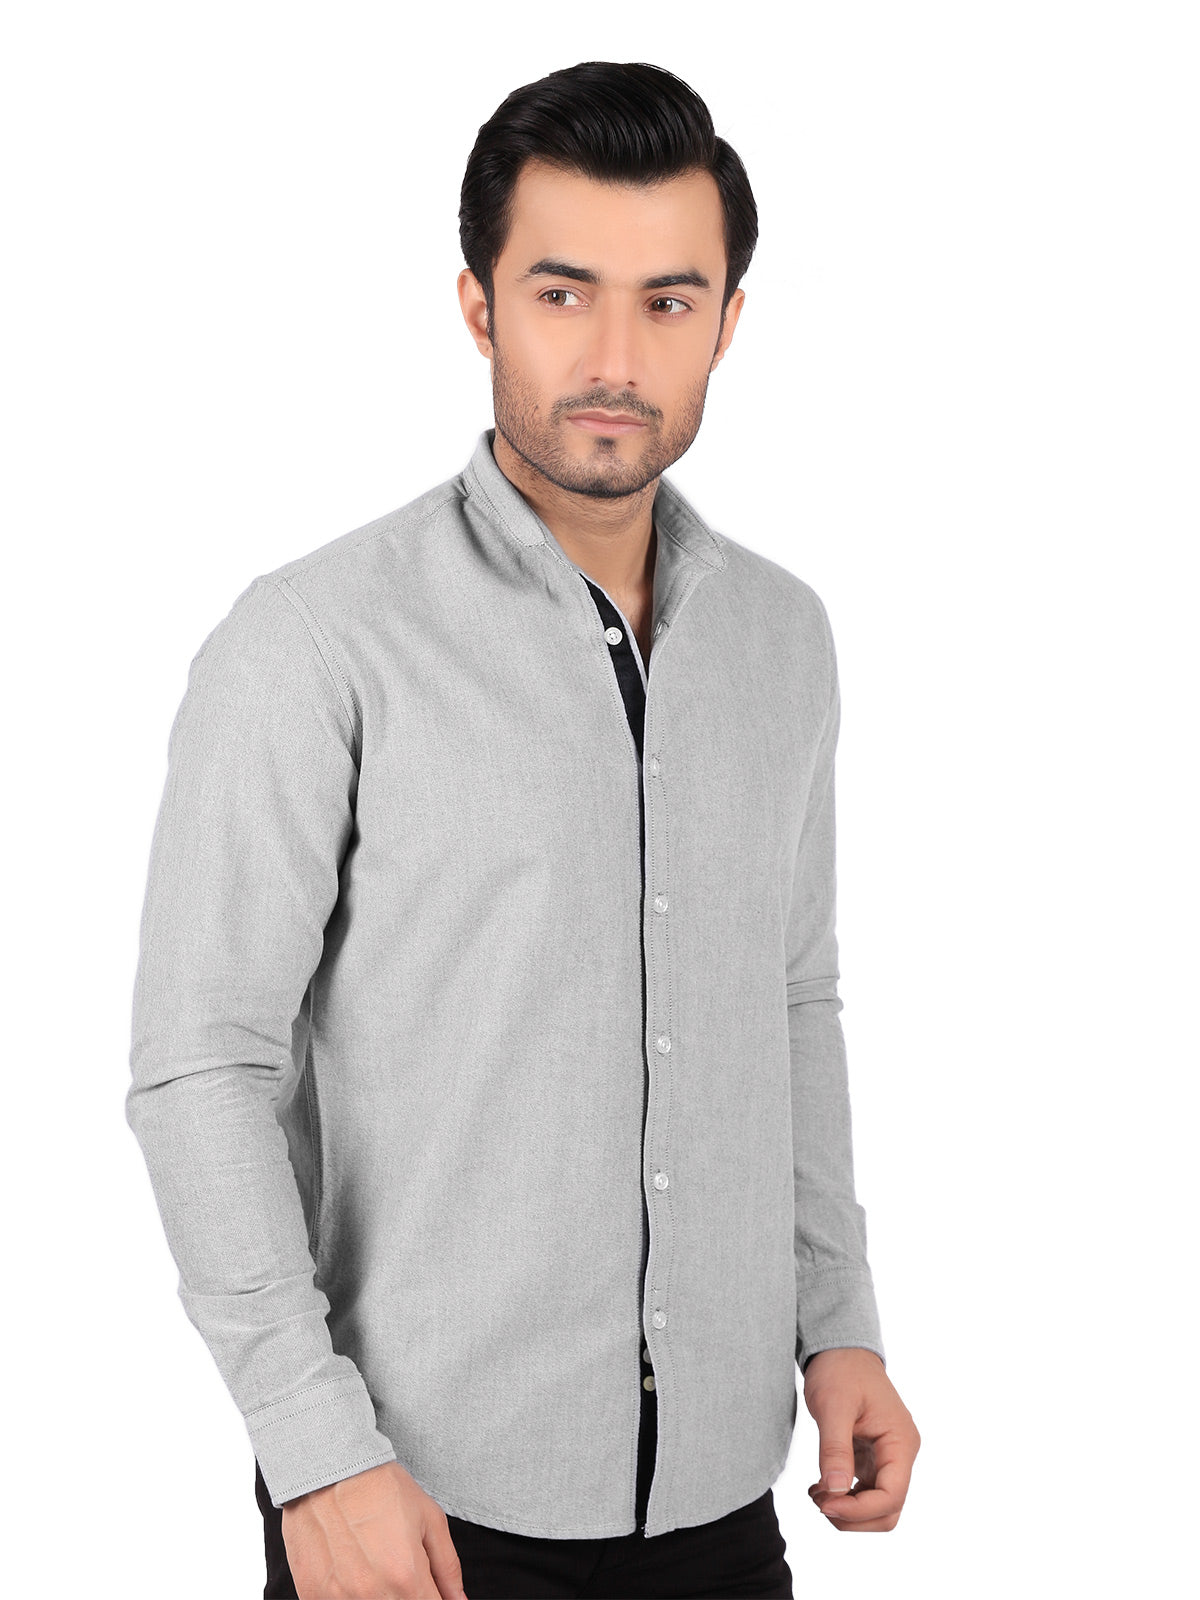 Men's Grey Casual Shirt - FMTS18-007